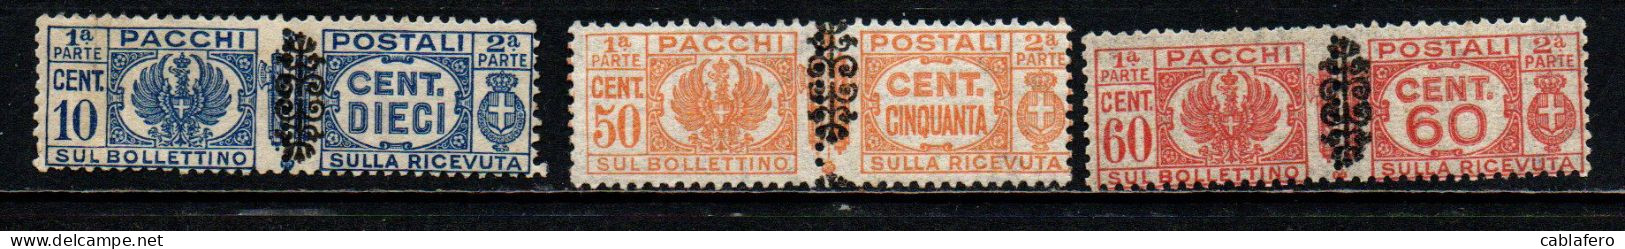 ITALIA LUOGOTENENZA - 1945 - STEMMA E CIFRA CON FREGIO NERO SUI FASCI - MNH - Postal Parcels